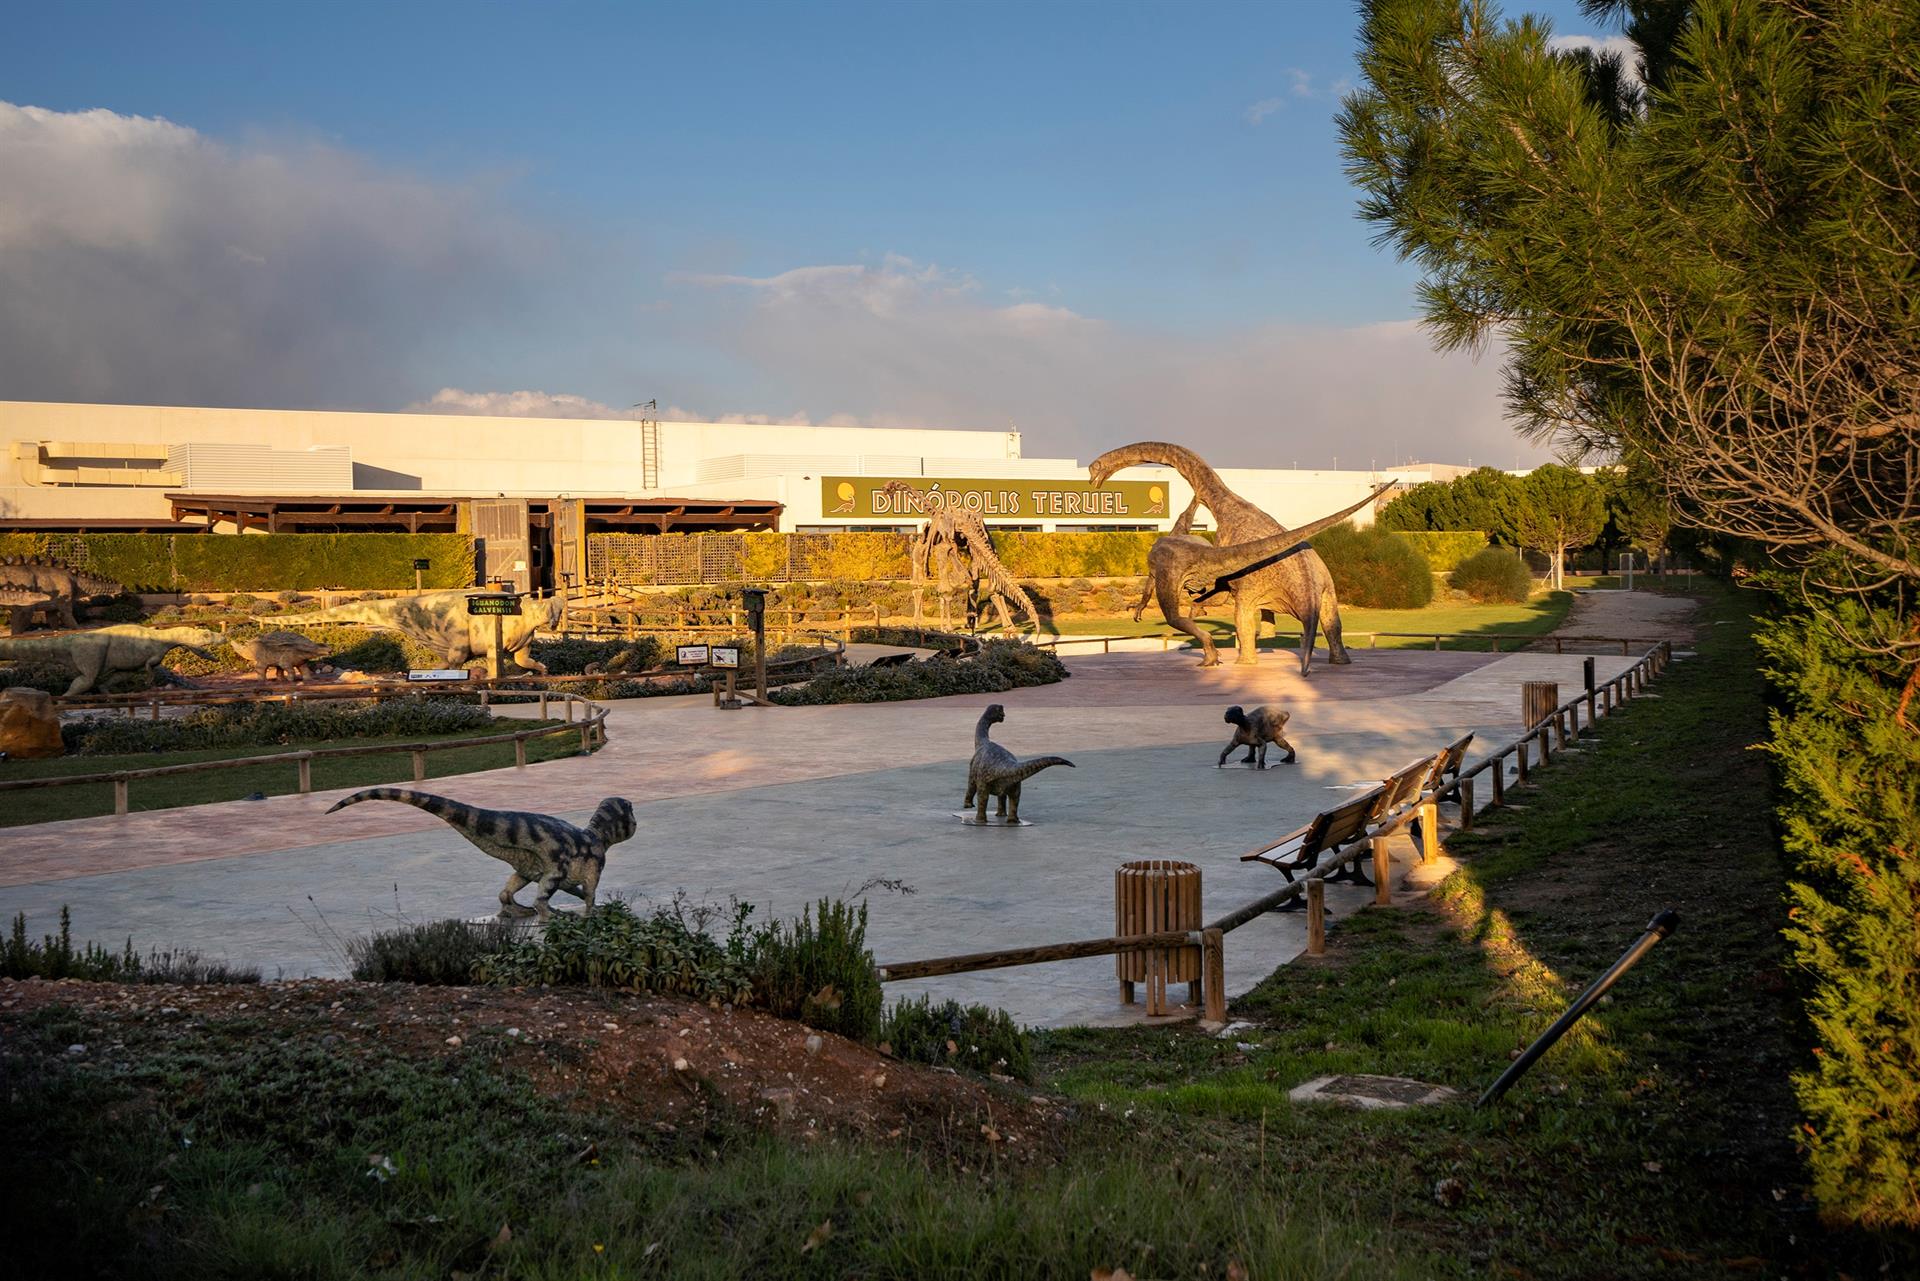 Vista de archivo de las instalaciones del parque de dinosaurios Dinópolis en Terue. EFE/ Antonio García